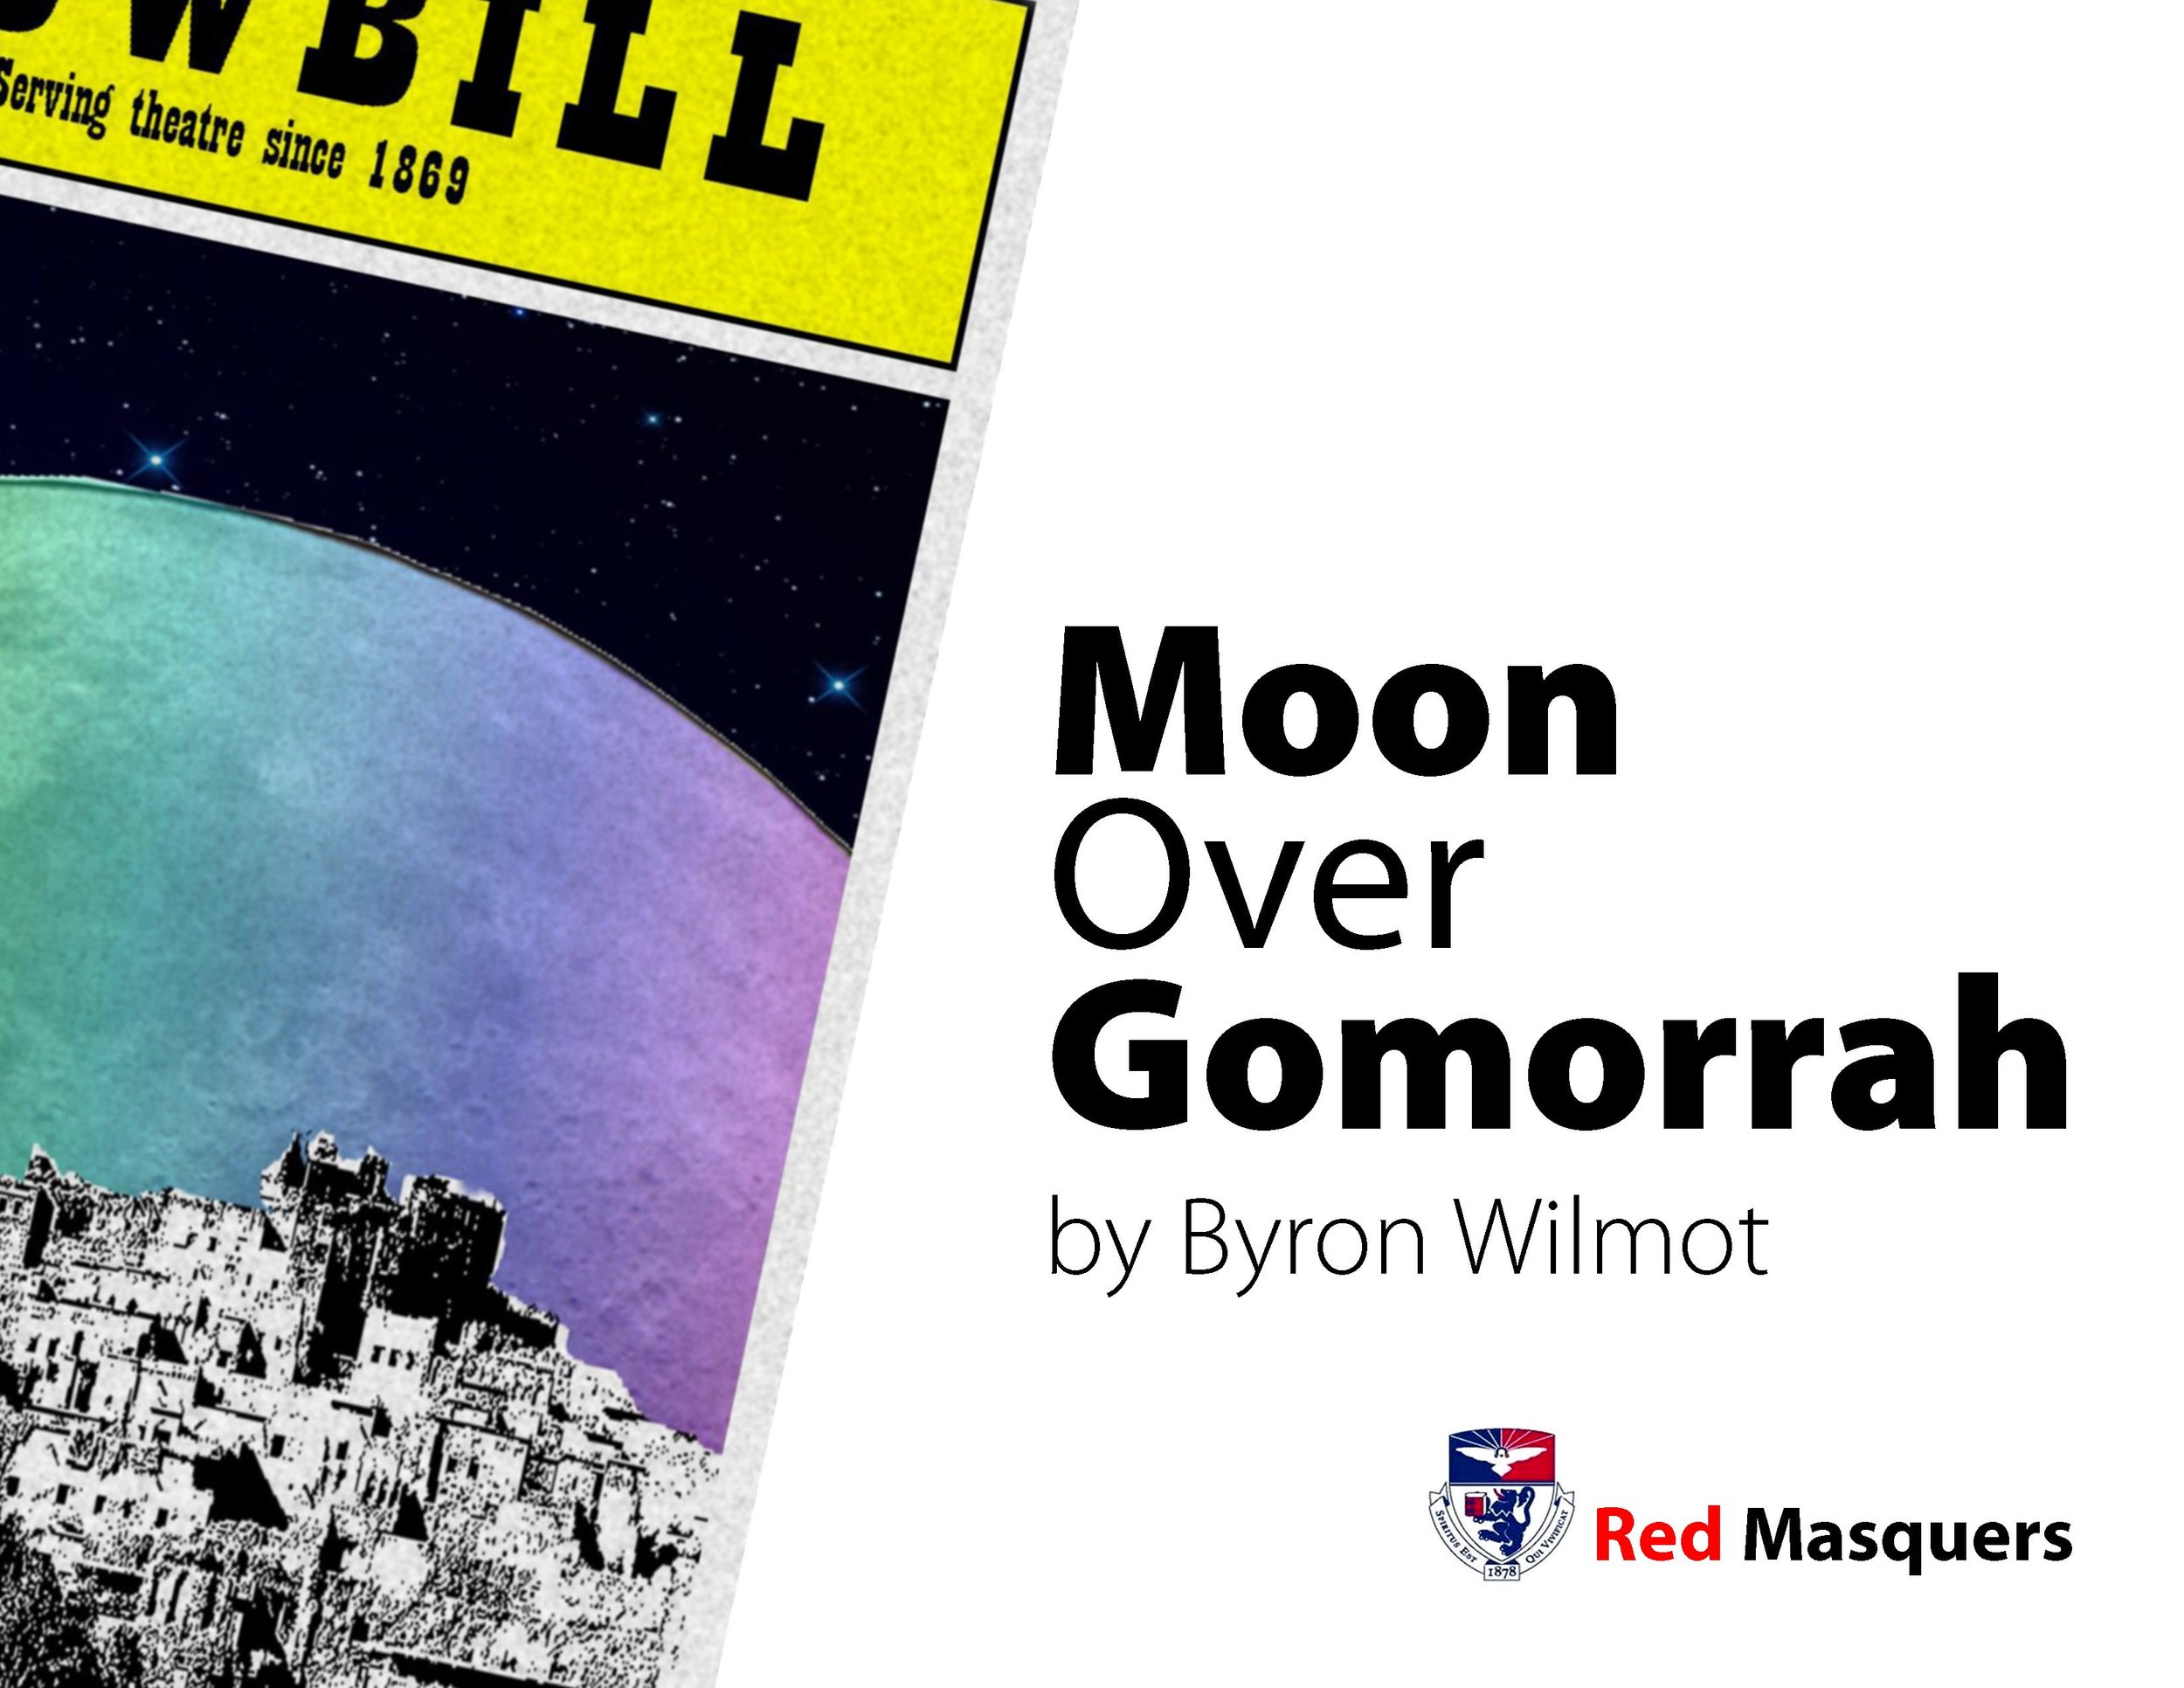 Moon Over Gomorrah Poster.jpg